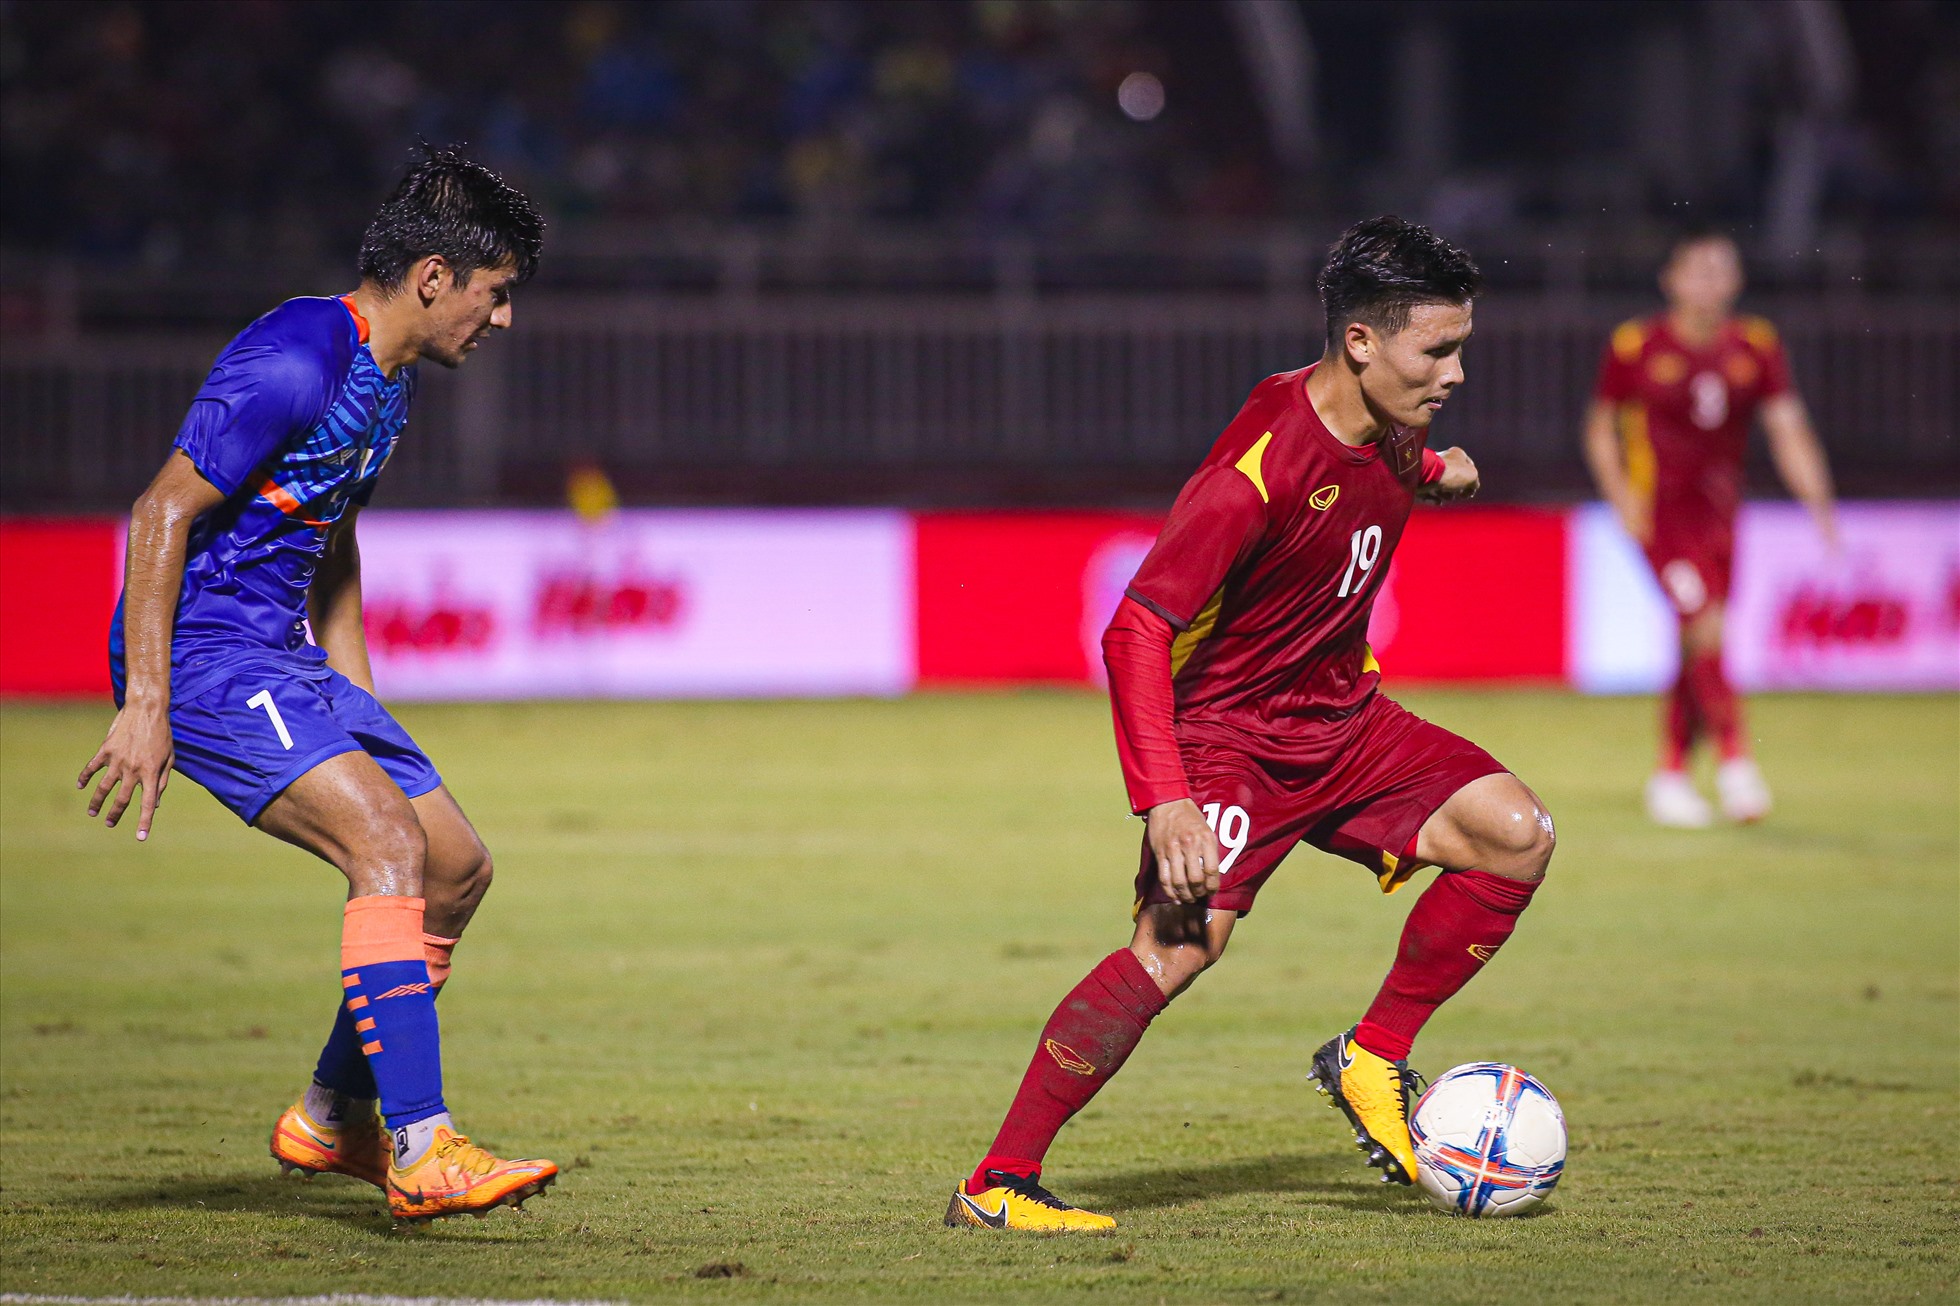 Đây là lần đầu tiên Quang Hải thi đấu cho đội tuyển quốc gia kể từ khi gia nhập câu lạc bộ Pau của Pháp.